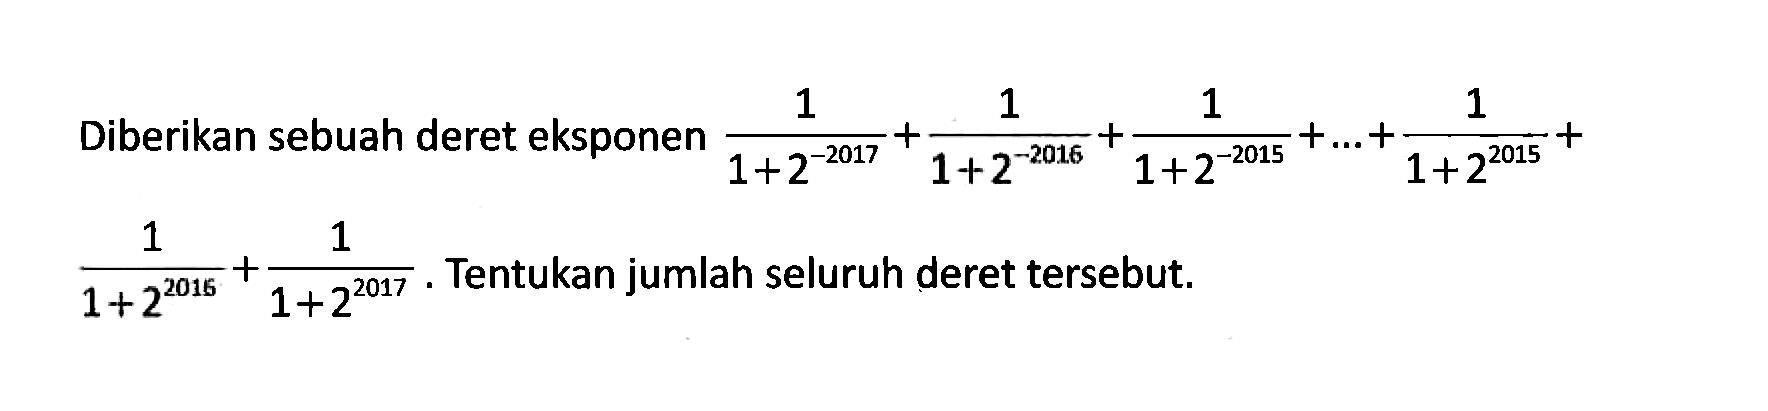 Diberikan sebuah deret eksponen 1/(1+2^(-2017)) + 1/(1+2^(-2016)) + 1/(1+2^(-2015)) + ... + 1/(1+2^2015) + 1/(1+2^2016) + 1/(1+2^2017). Tentukan jumlah seluruh deret tersebut. 